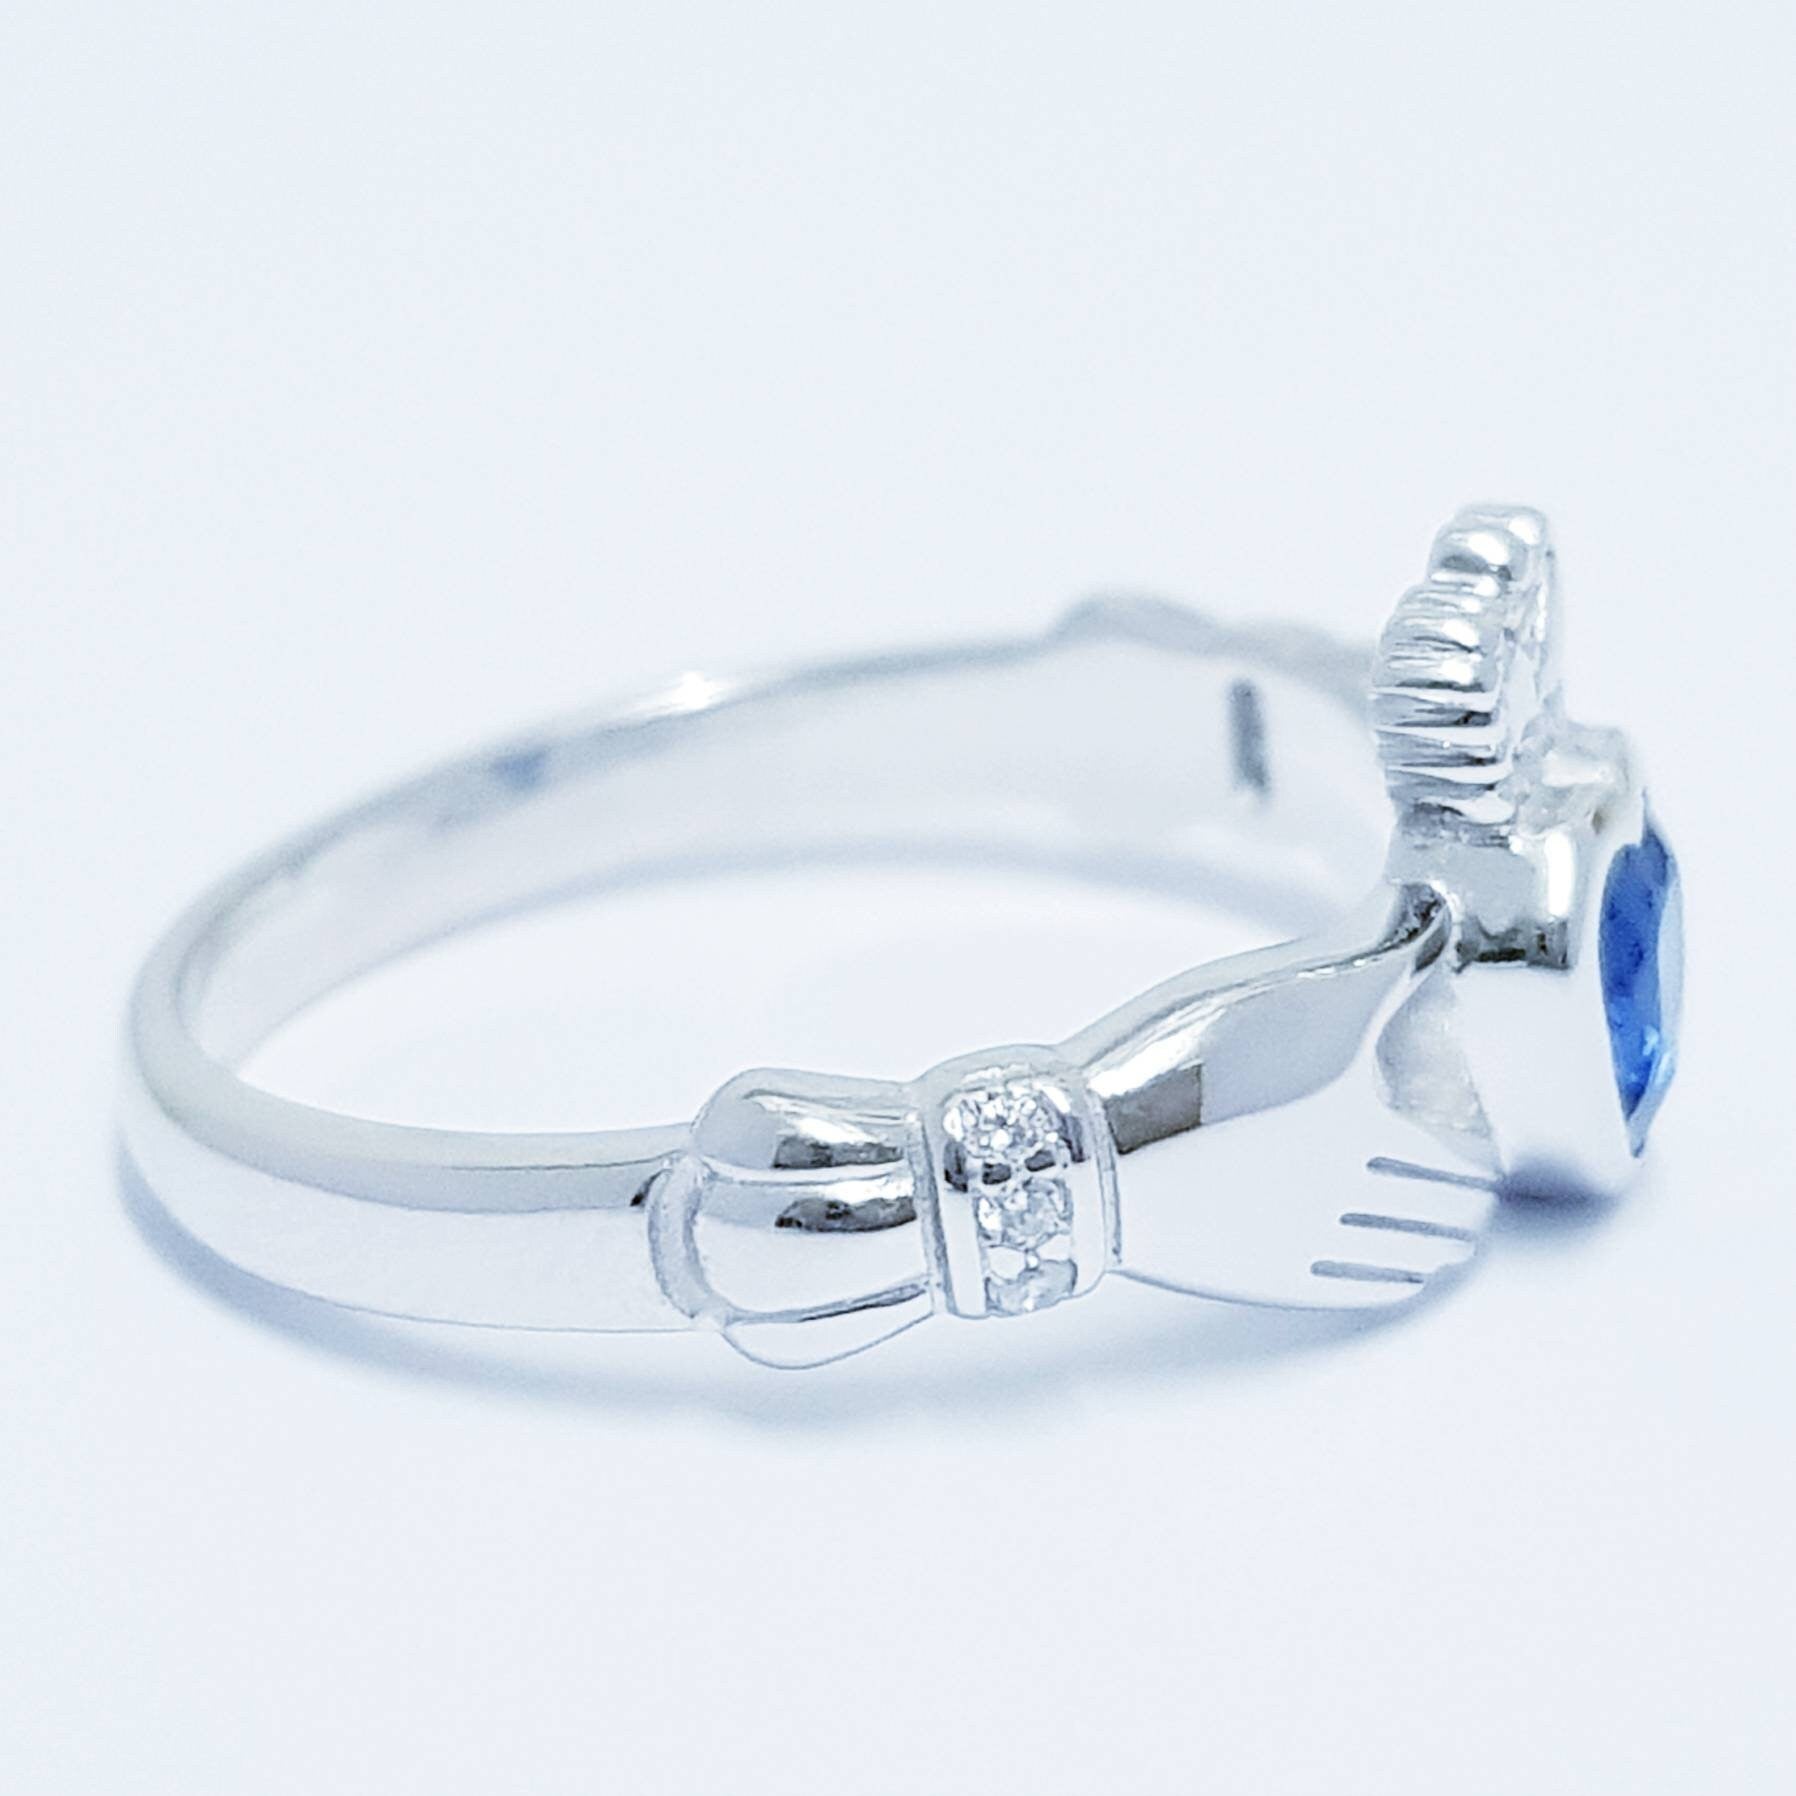 Sterling Silver Claddagh Ring, Claddagh birthstone Ring, Claddagh ring